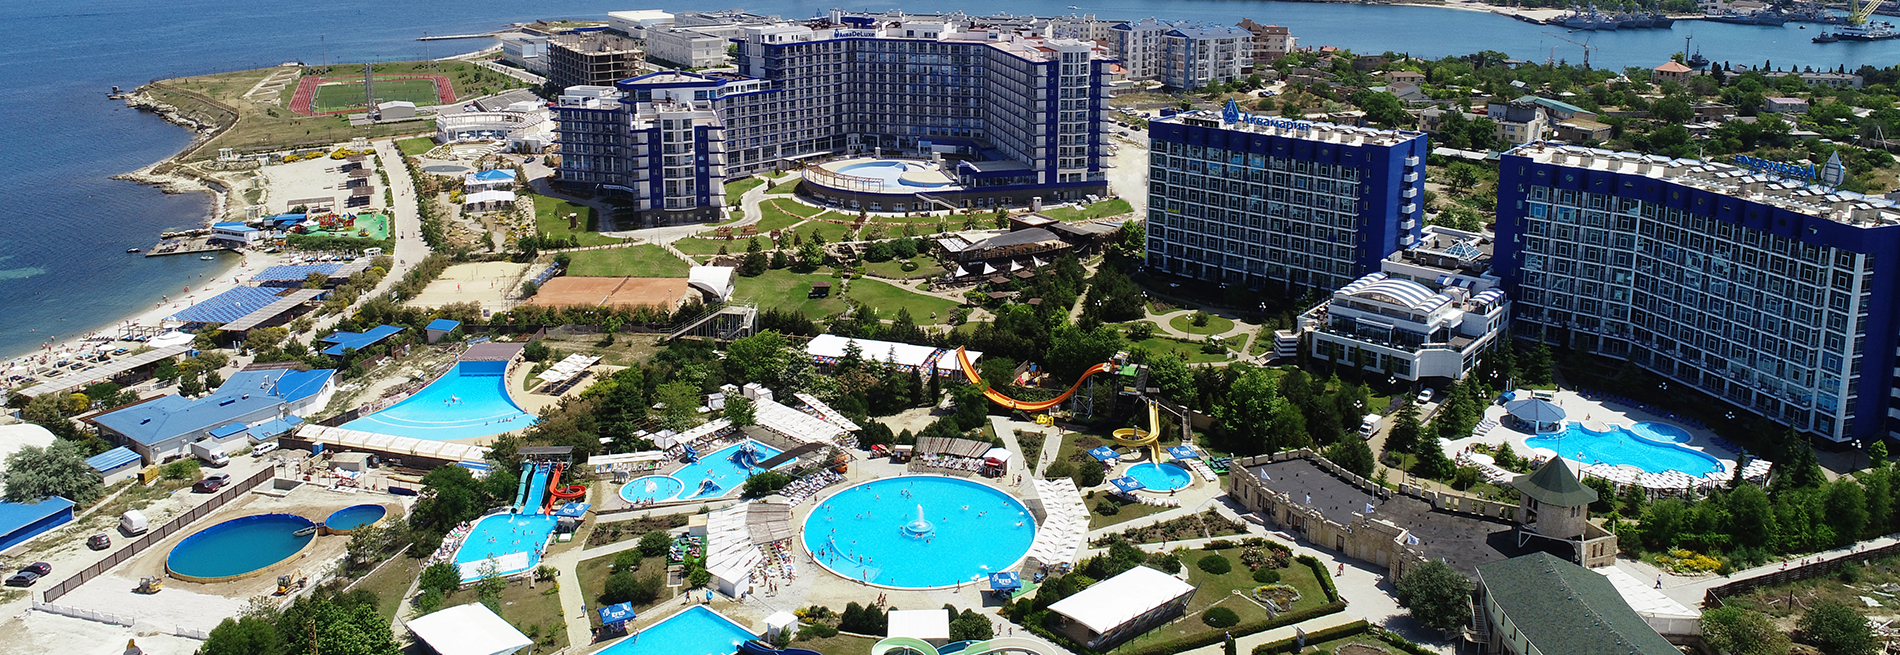 Санаторно-курортный комплекс <br> "Aquamarine Resort & SPA"